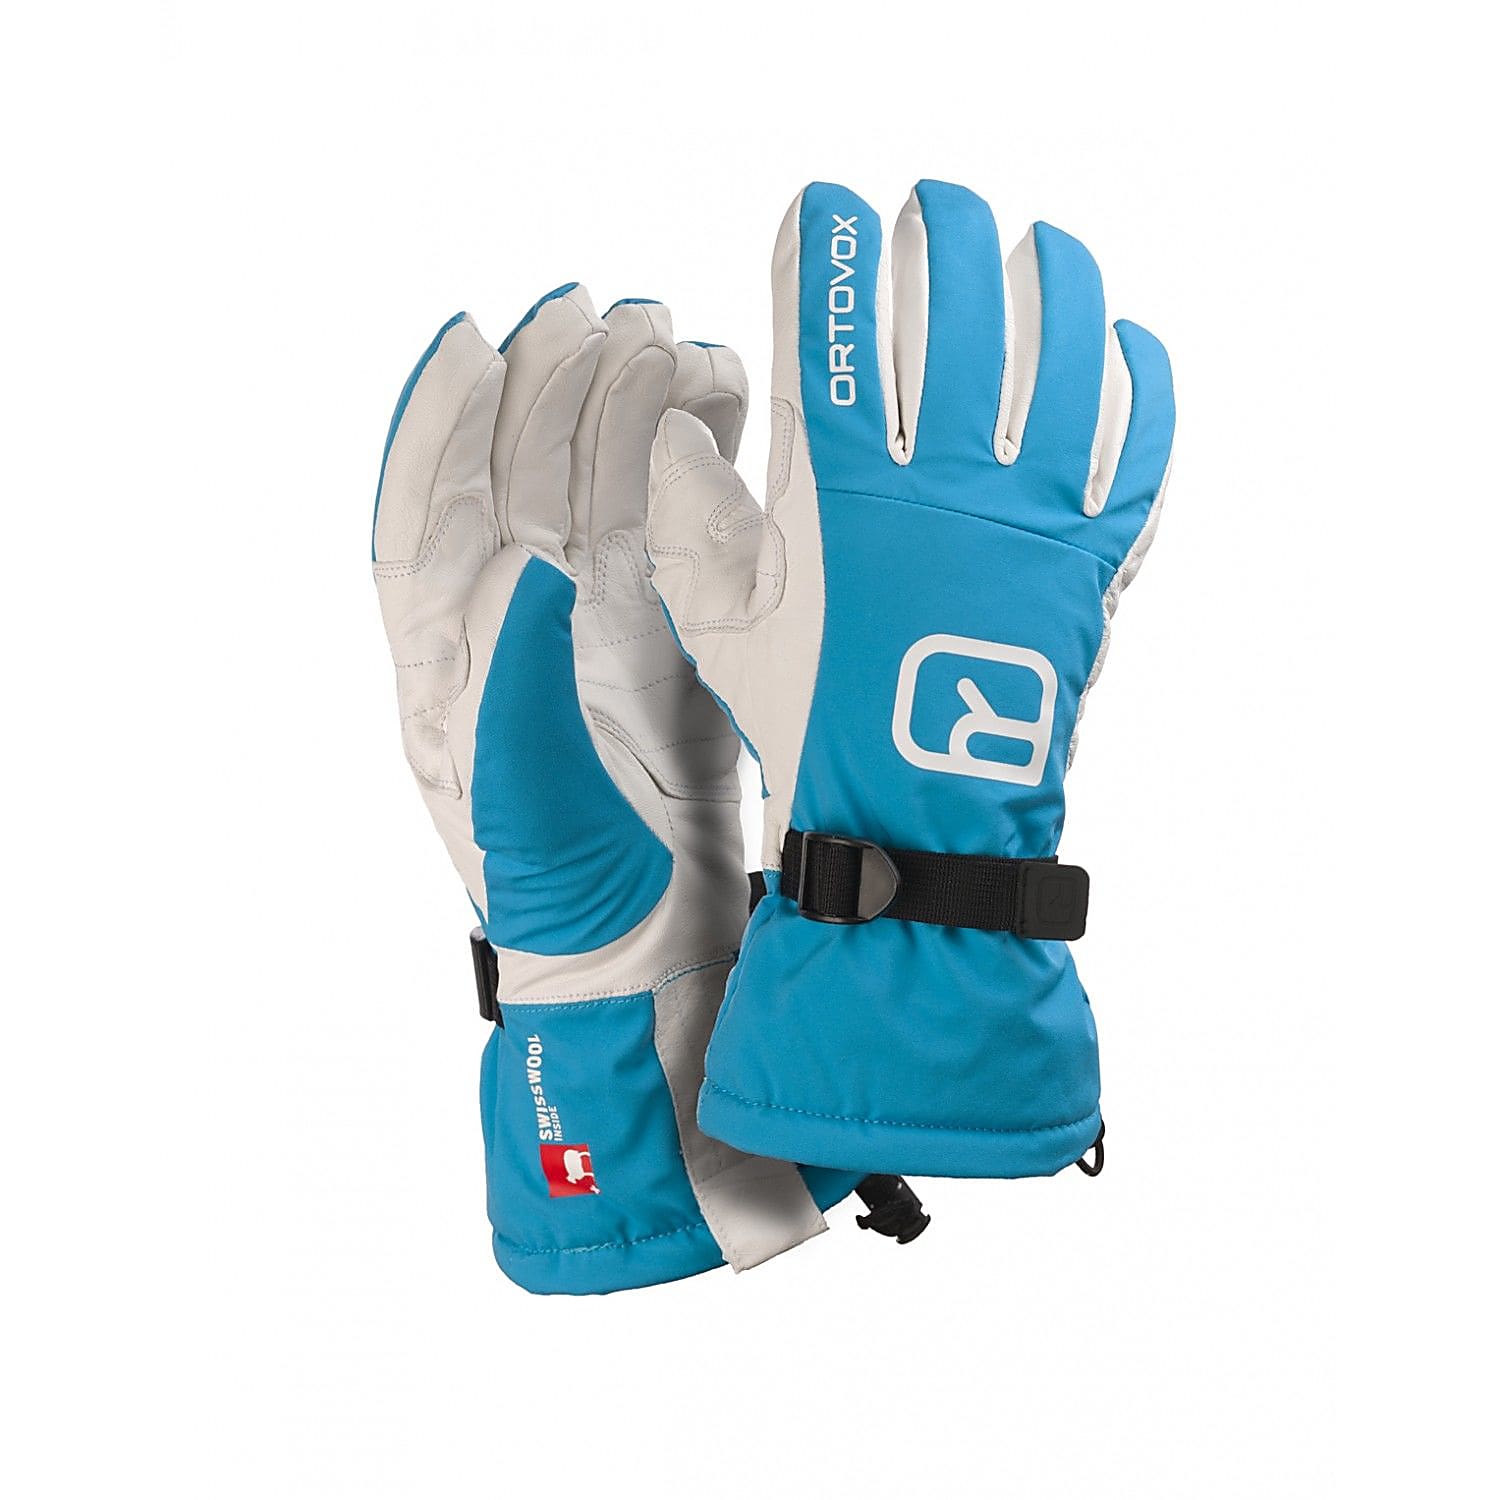 Характеристики лыжные перчатки для взрослых Ortovox Freeride Blue Lagoon (XS)